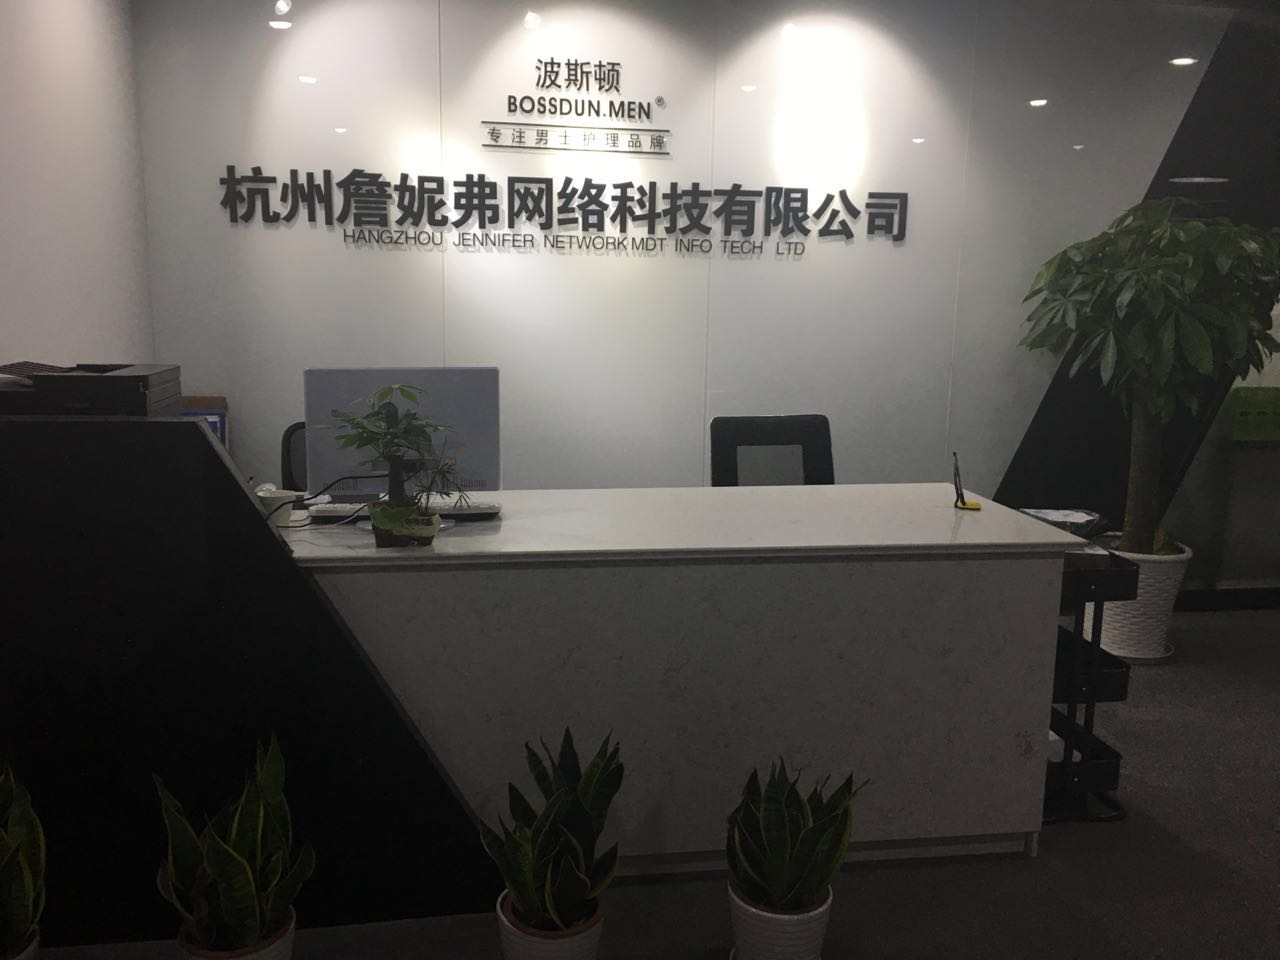 杭州詹妮弗网络科技有限公司成立